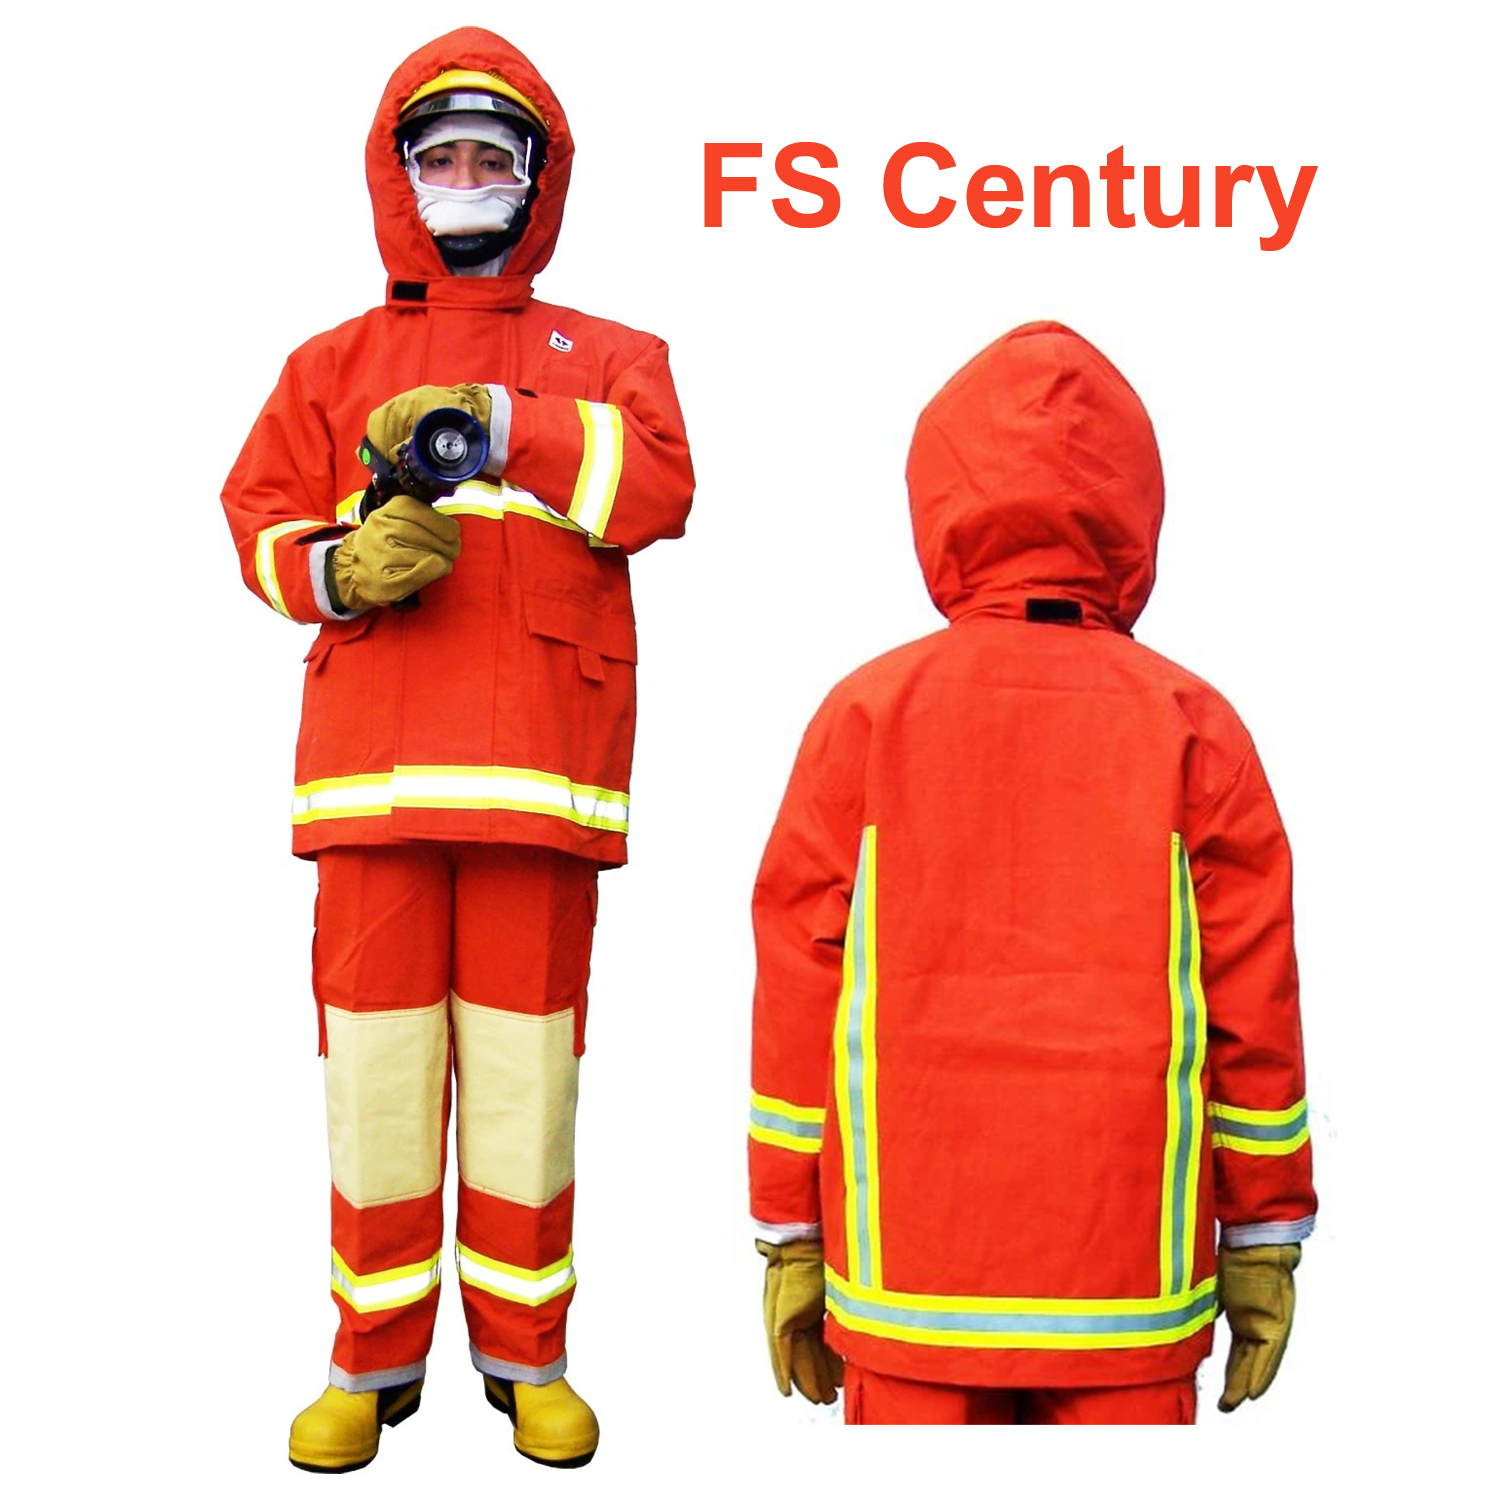 ชุดดับเพลิง ของแท้ เสื้อ กางเกงพร้อมผ้าคลุมศีรษะ สีส้ม มาตรฐานสากล ทนไฟ FS Century